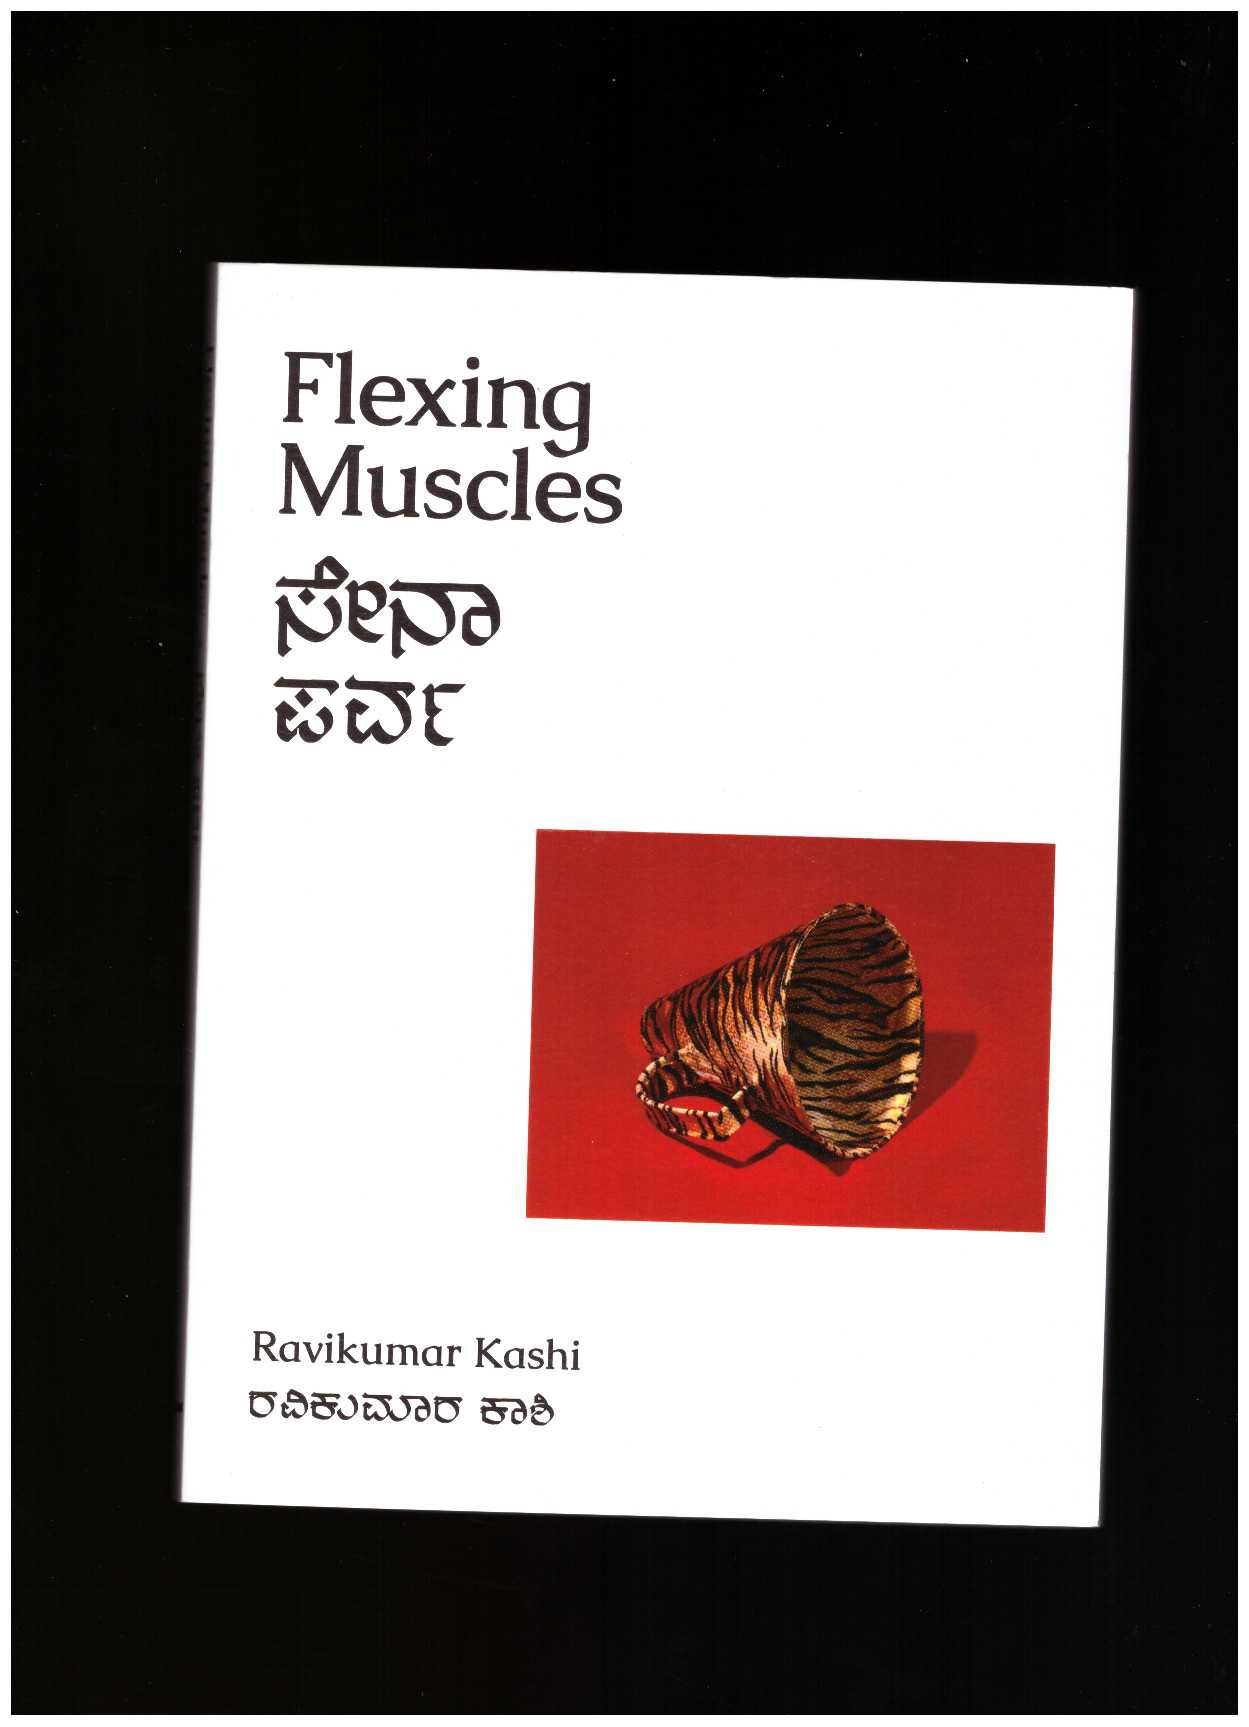 KASHI, Ravikumar - Flexing Muscles